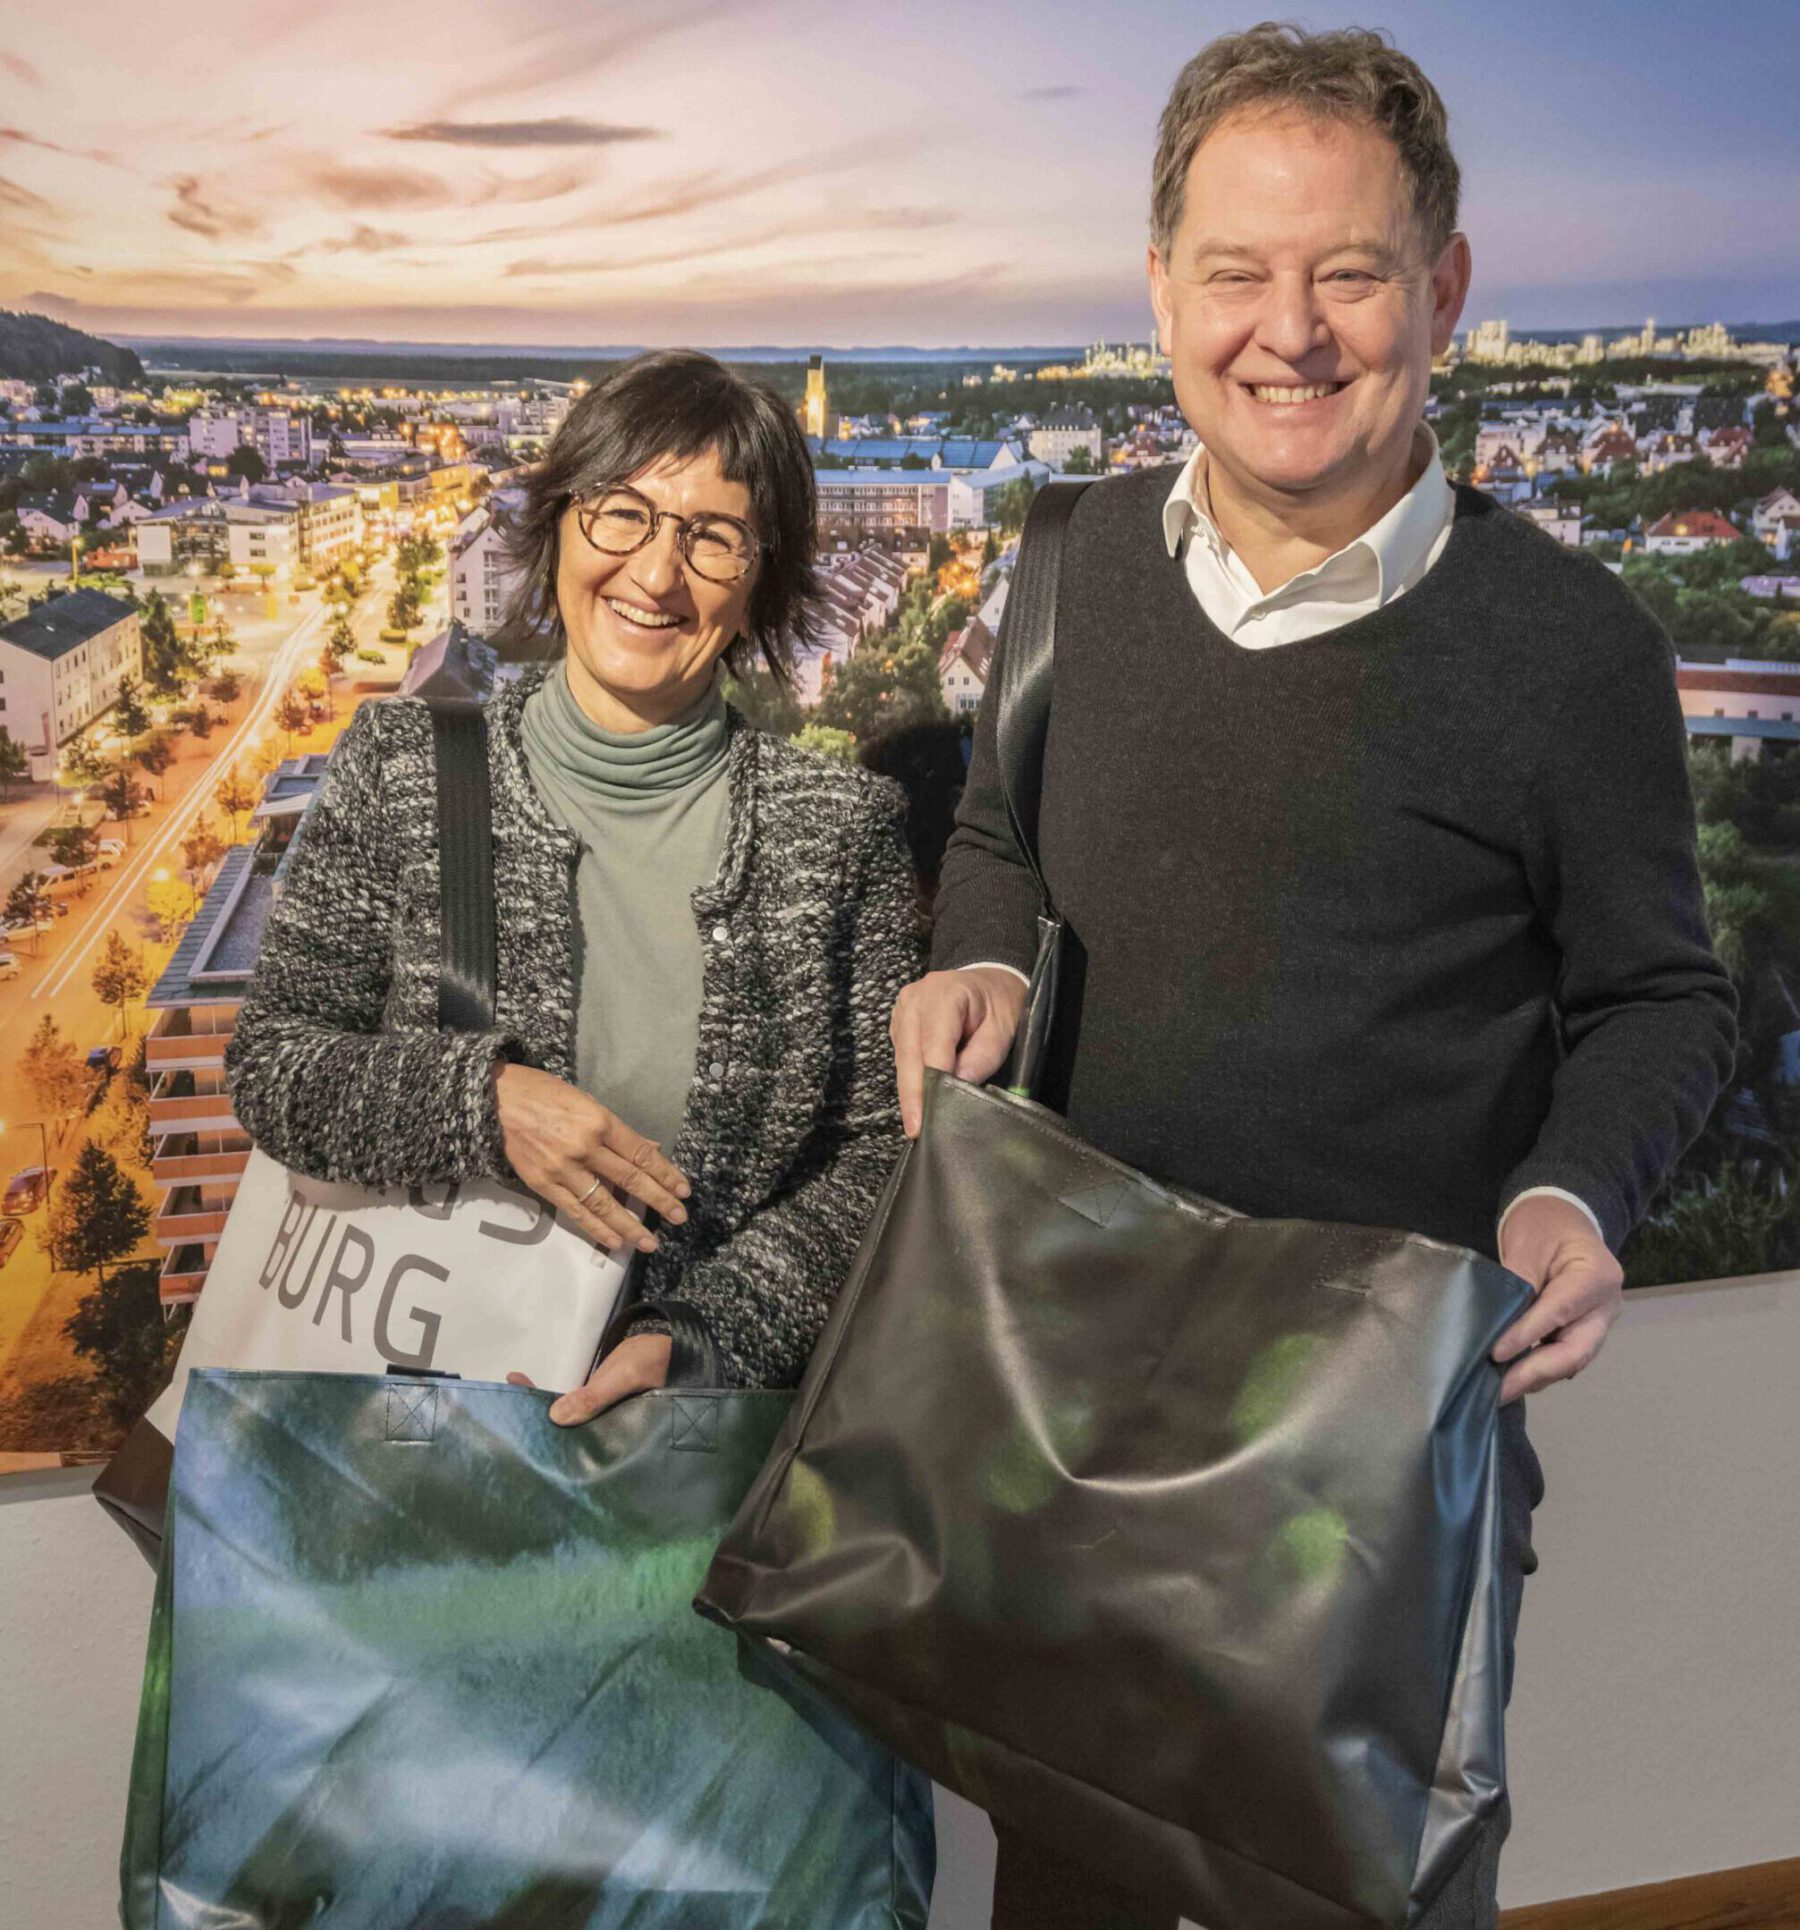 Umweltfreundlich, praktisch und eine schöne Erinnerung an die Jane-Goodall-Veranstaltung – die neue nachhaltige Burghausen Tasche, jede ist ein Unikat. Fotocredit: Stadt Burghausen